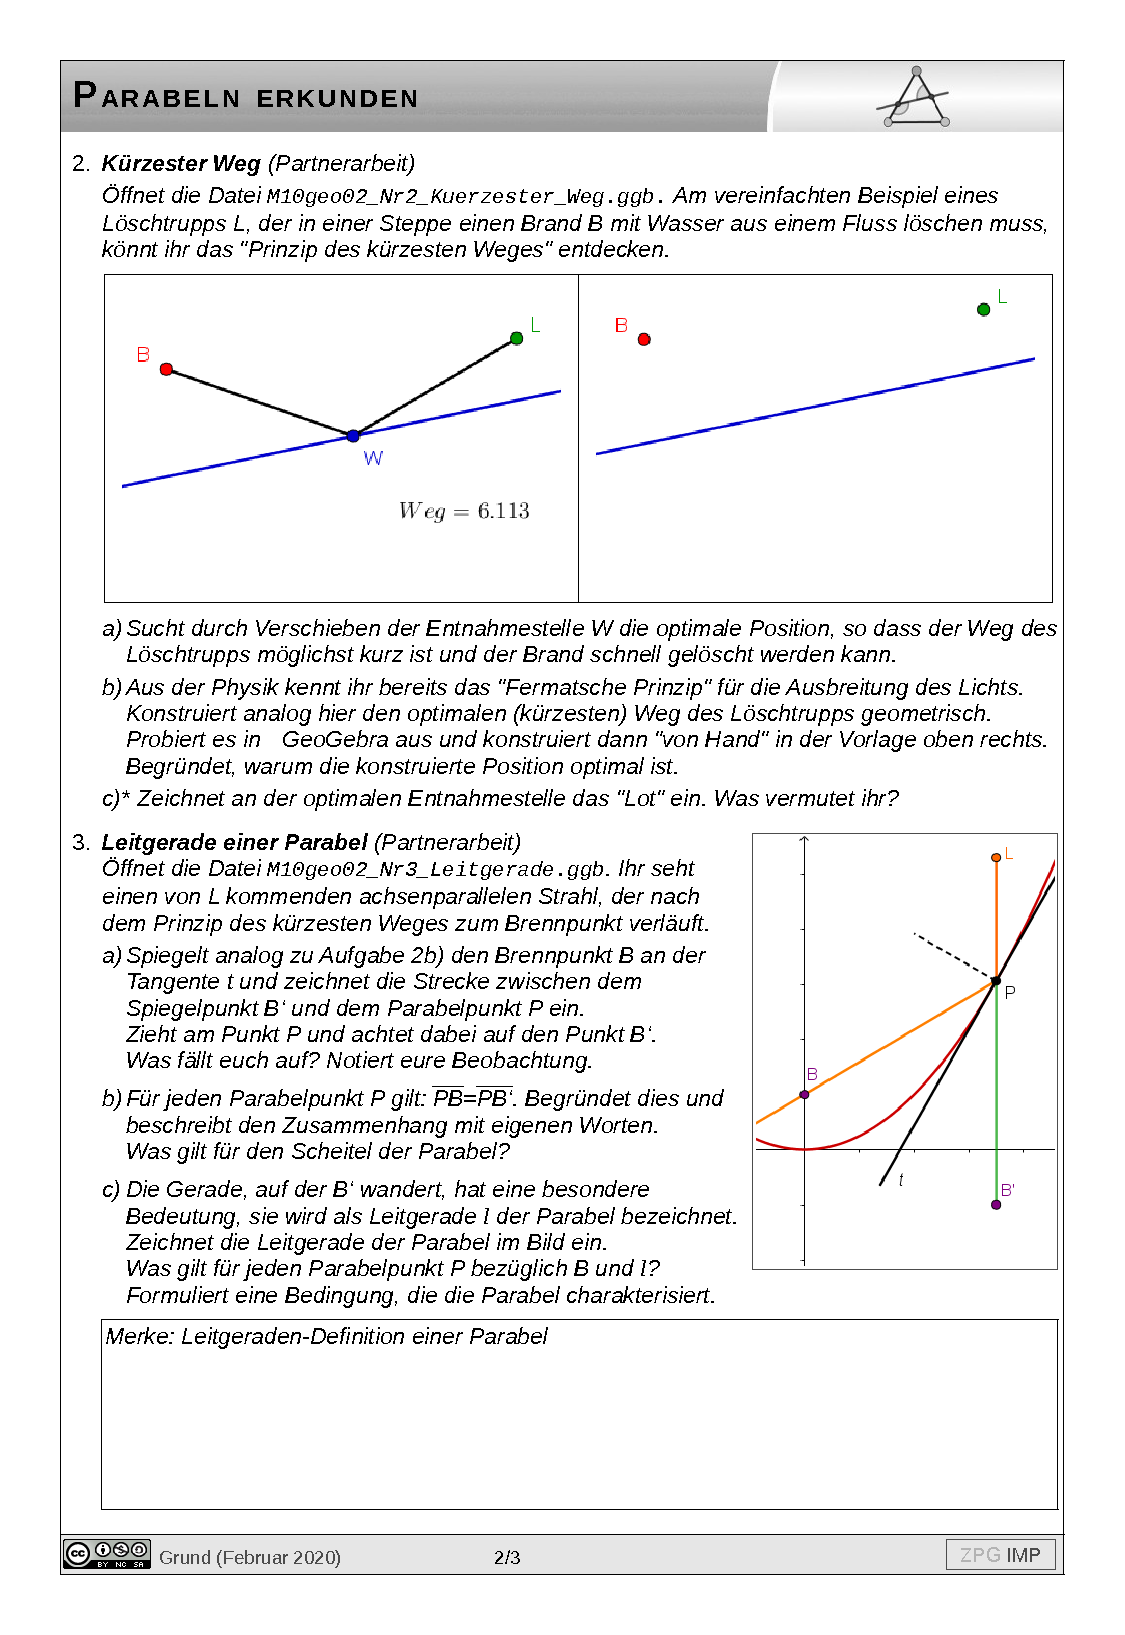 Parabel erkunden, Seite 2